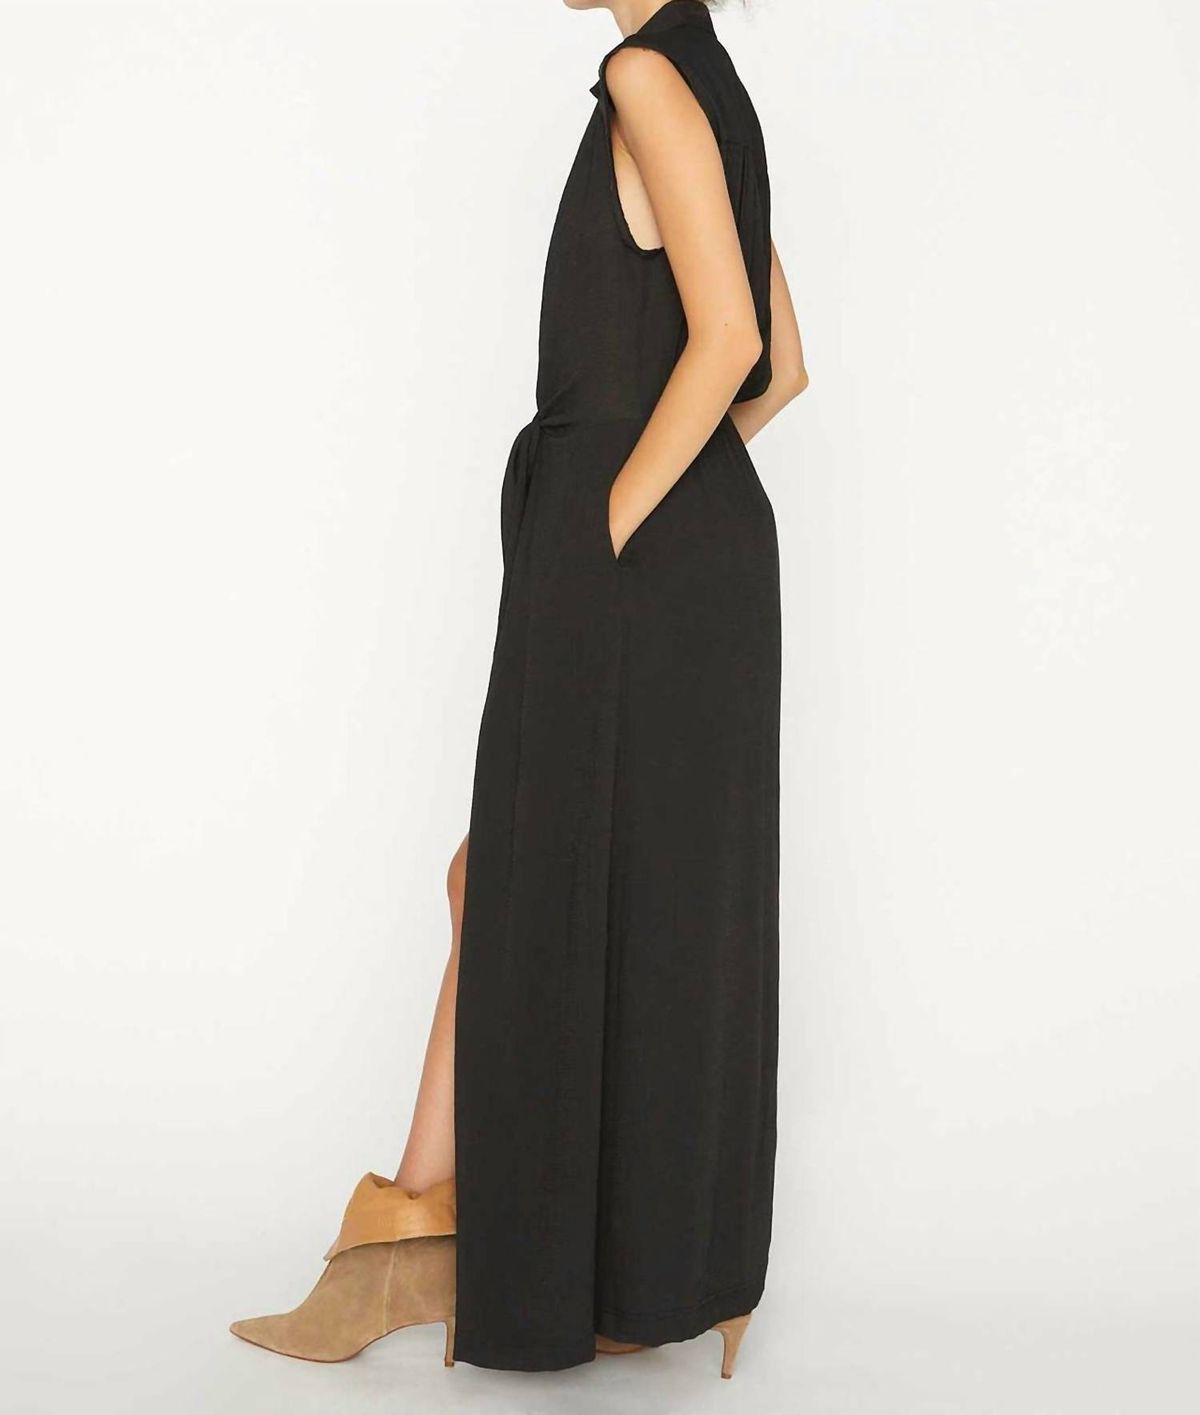 Style 1-477521851-2901 Brochu Walker Size M Black Side Slit Dress on Queenly